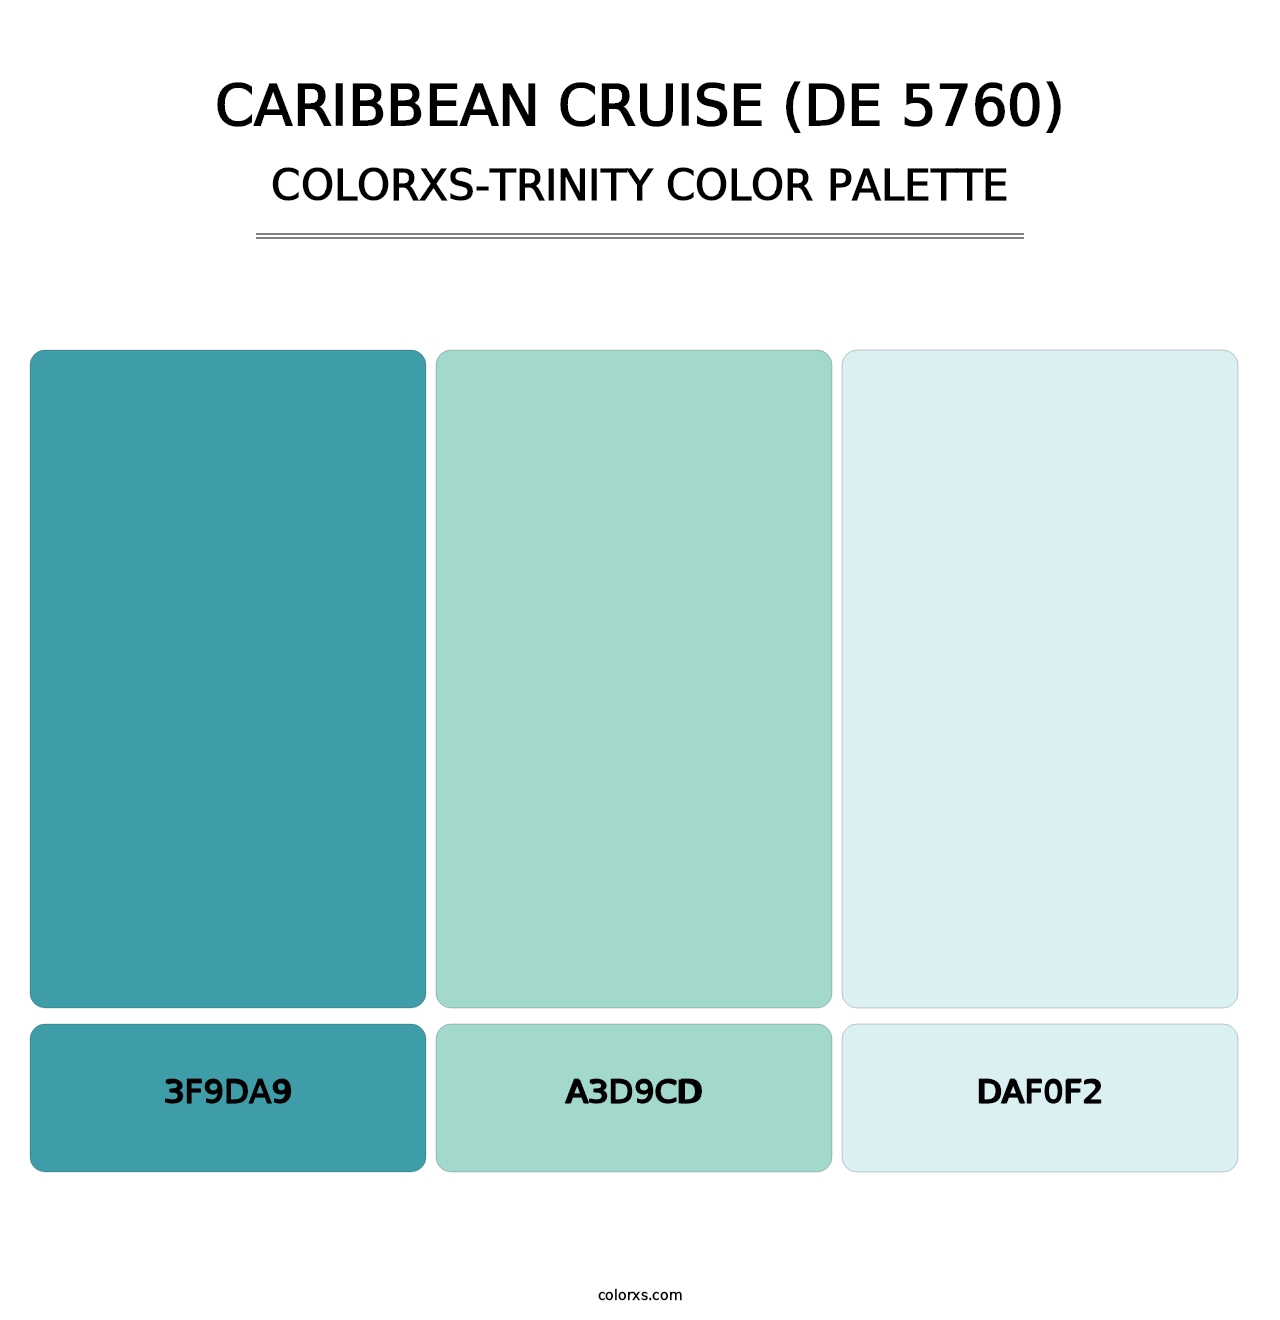 Caribbean Cruise (DE 5760) - Colorxs Trinity Palette